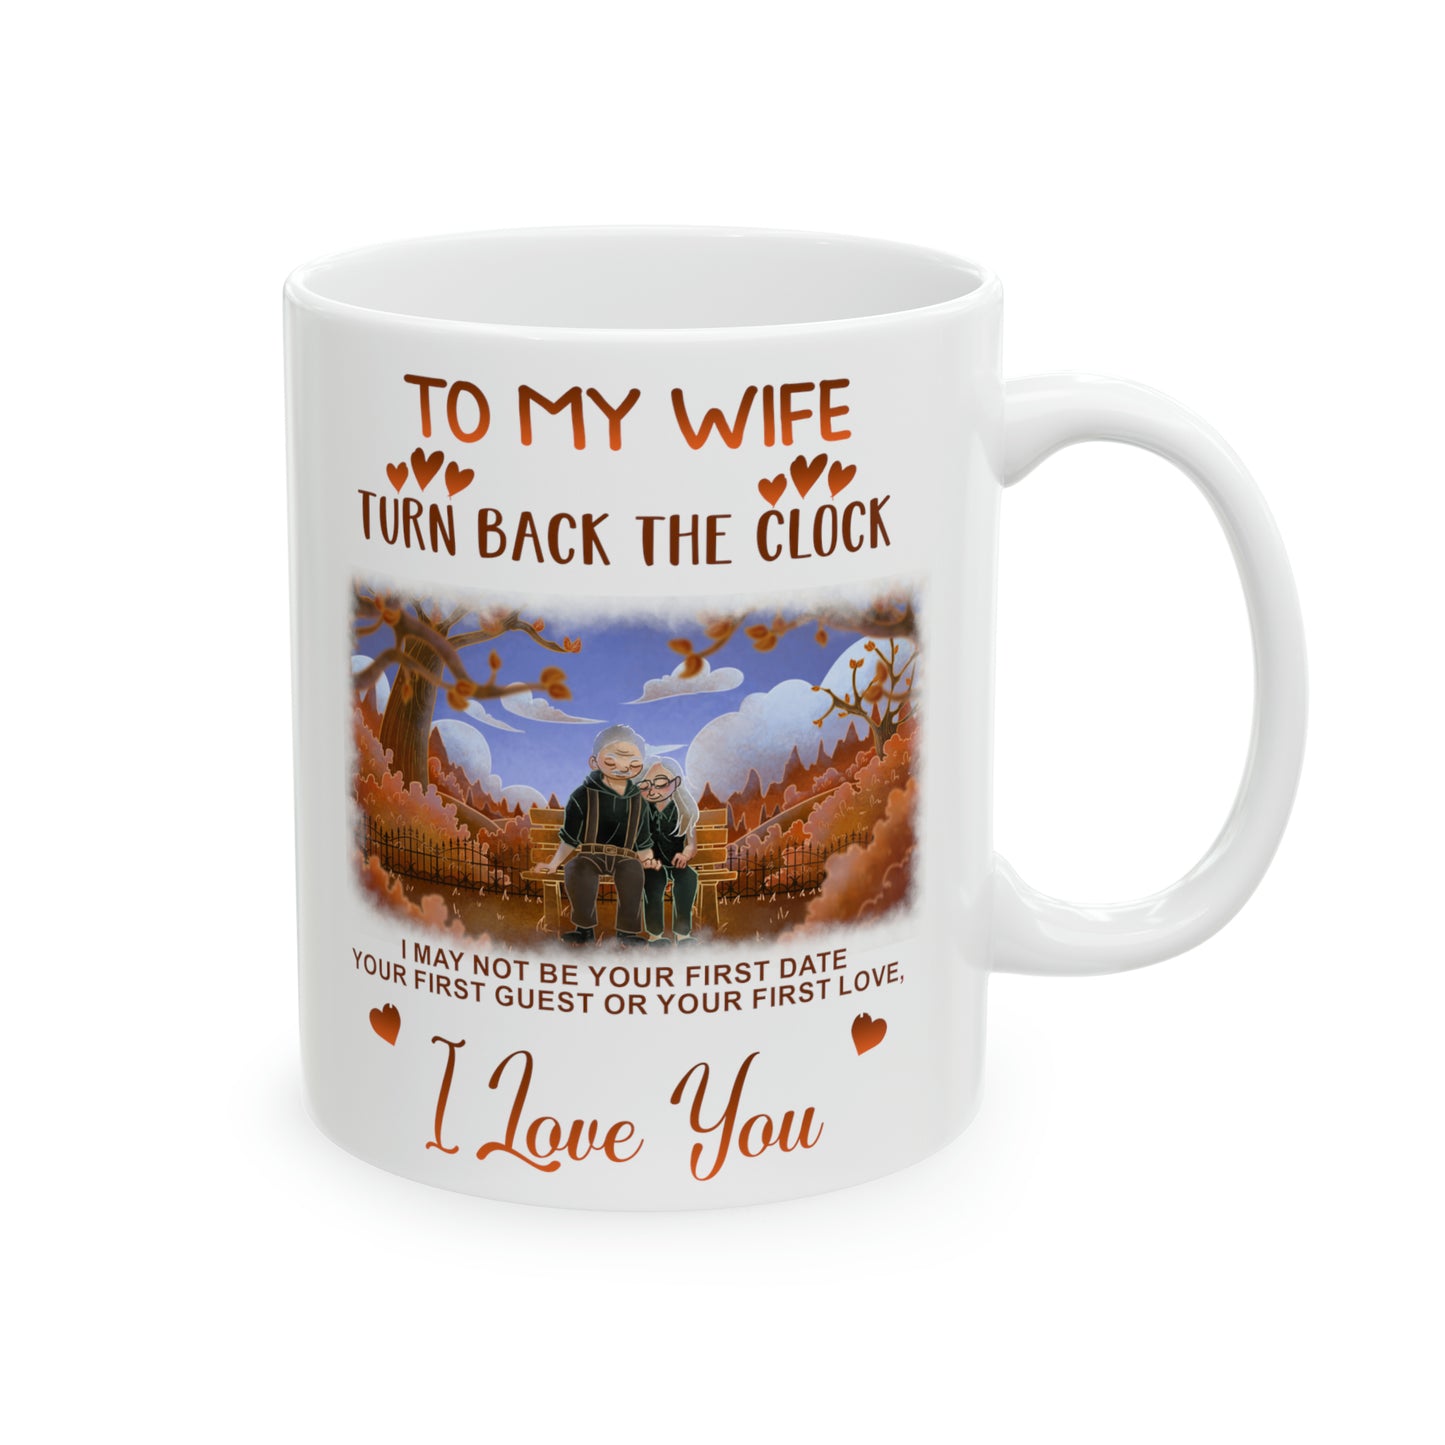 To My Wife | I Love You - Ceramic Mug, 11oz